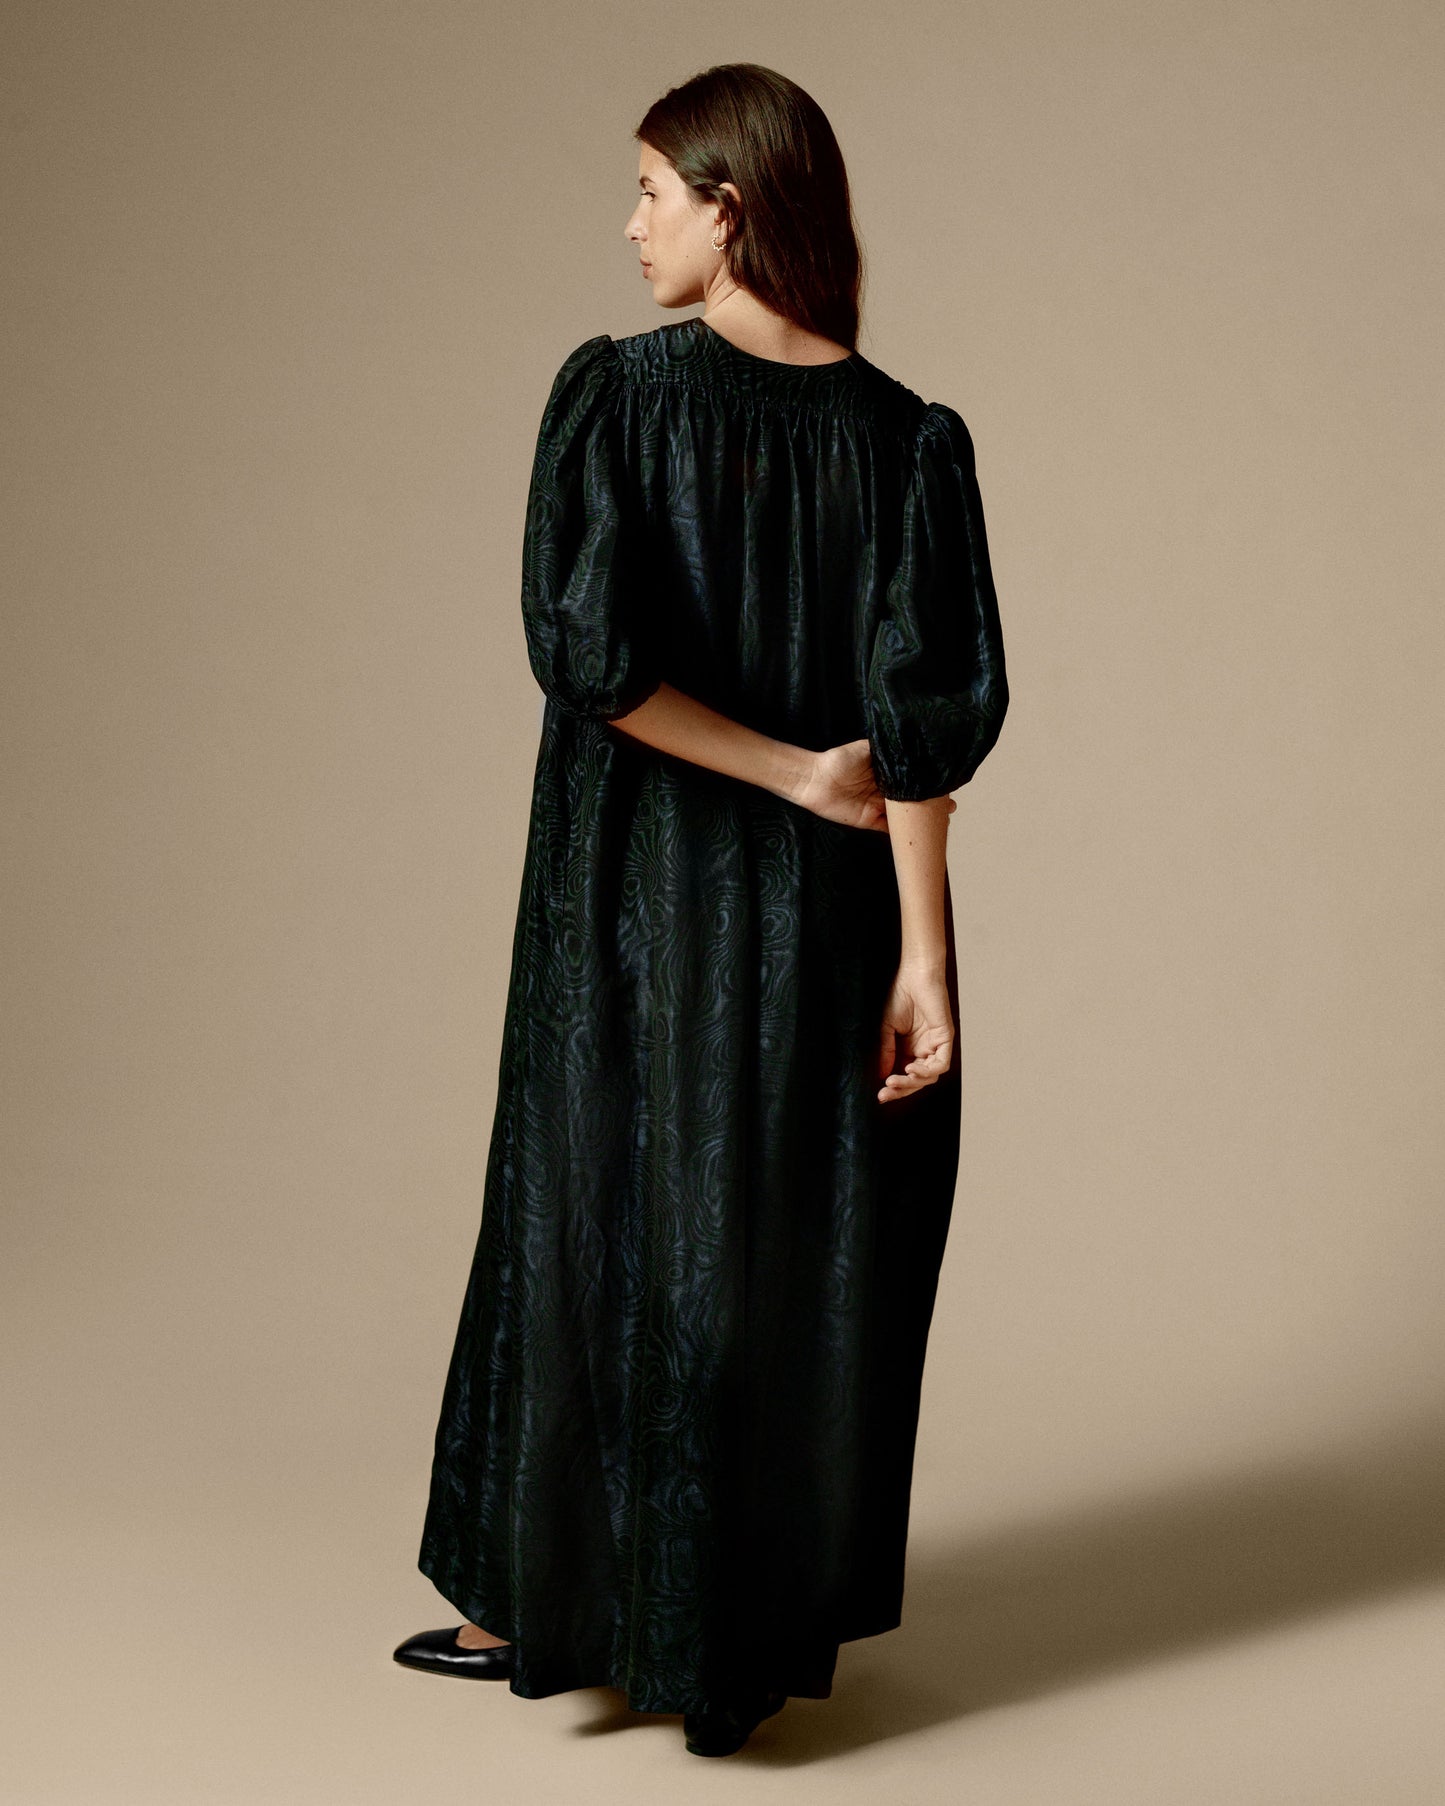 FALLON-robe-saintlaurentrivegauche-noir-bleu-satin-vintage-luxe-rare-mode-collection-femme00009